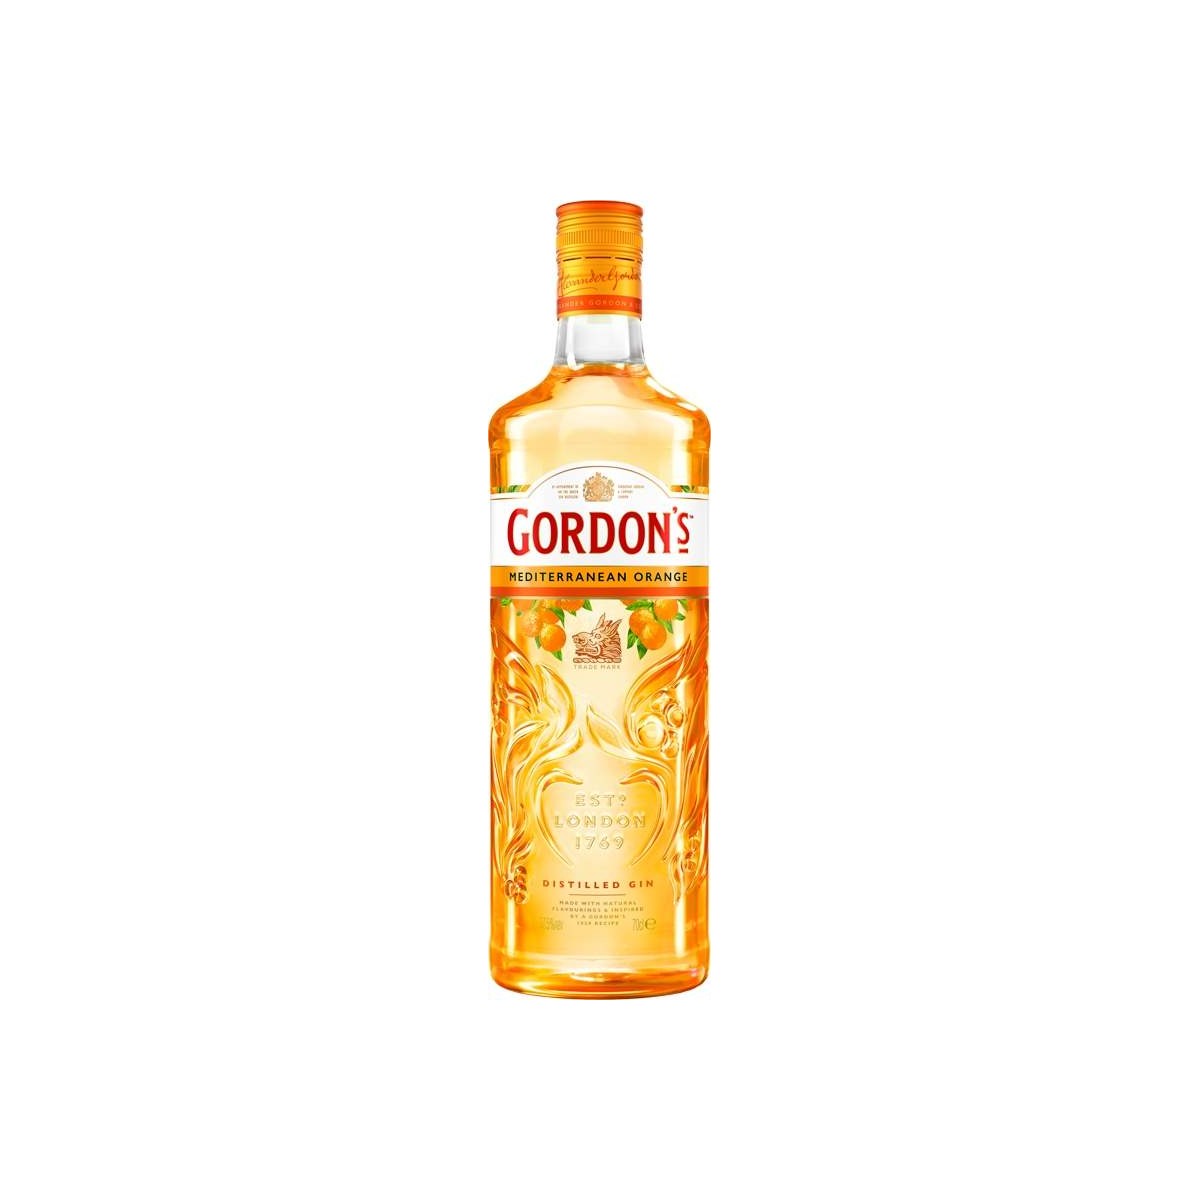 Gordon's Mediterranean Orange Gin 0,7l